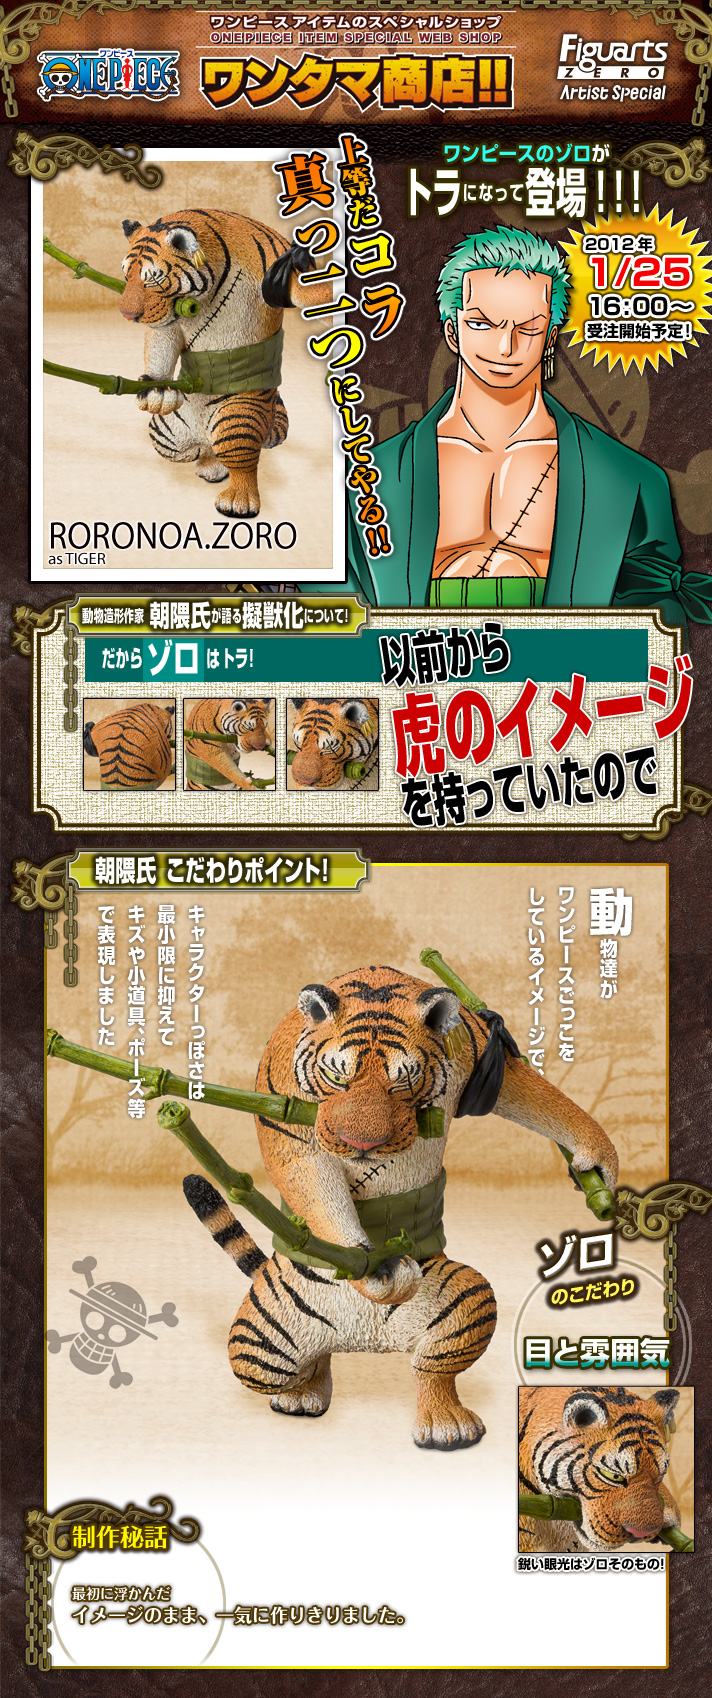 フィギュアーツ ZERO Artist Special ロロノア・ゾロ as トラ | ONE 